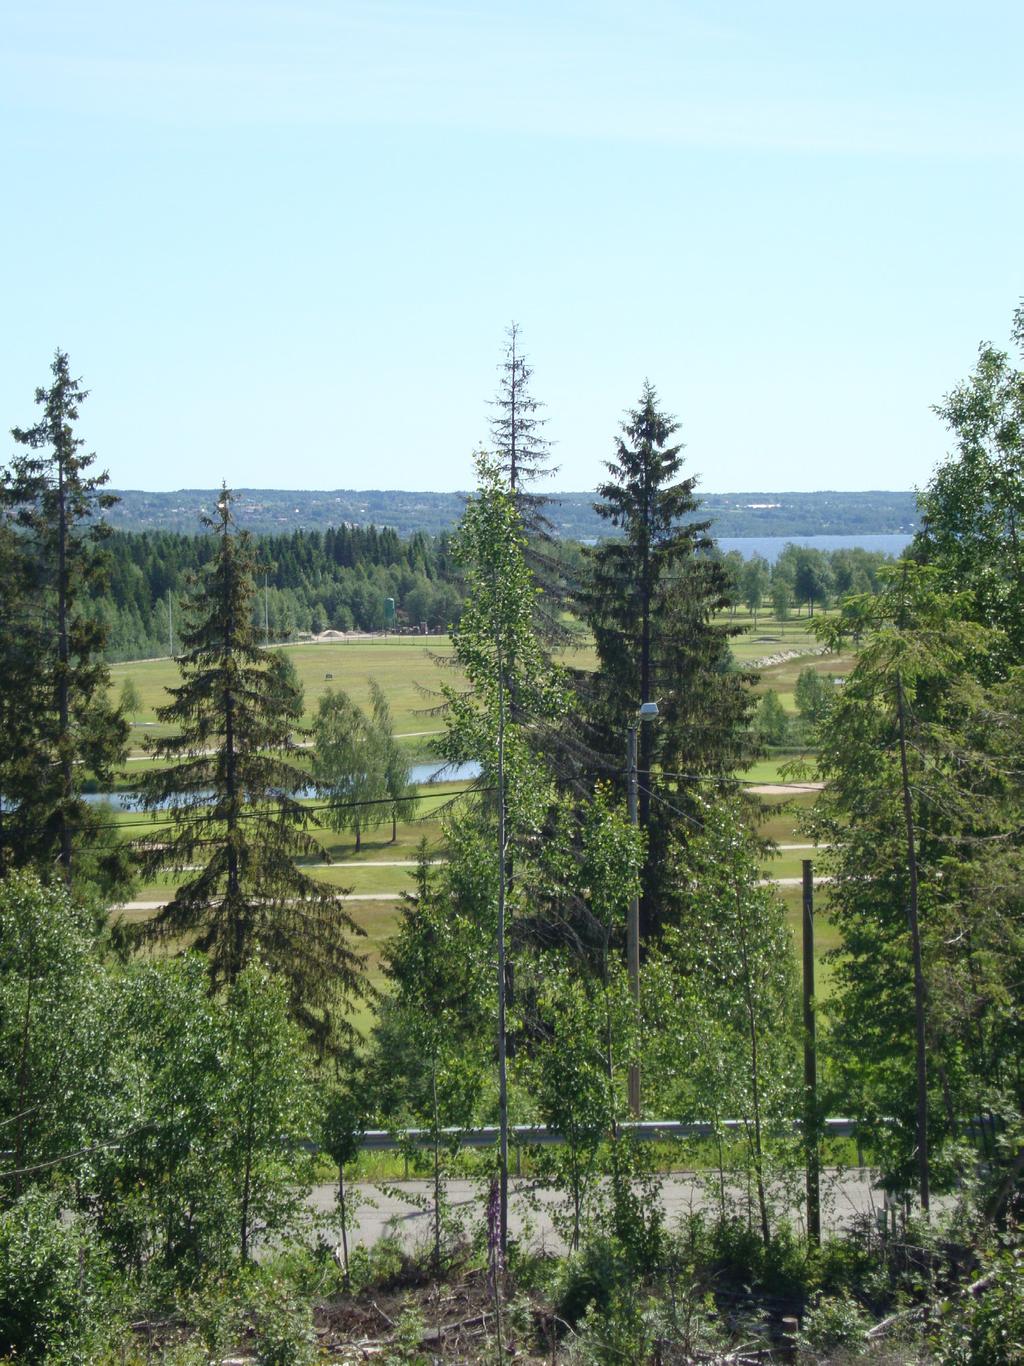 Utblick från Ubo 7 över golfbanan och havet. Ubo 7, Fagervik, Golfbanehyllan. Ett område väster om golfbaneområdet som i första hand föreslås för flerbostadshus, till exempel i form av bostadsrätter.